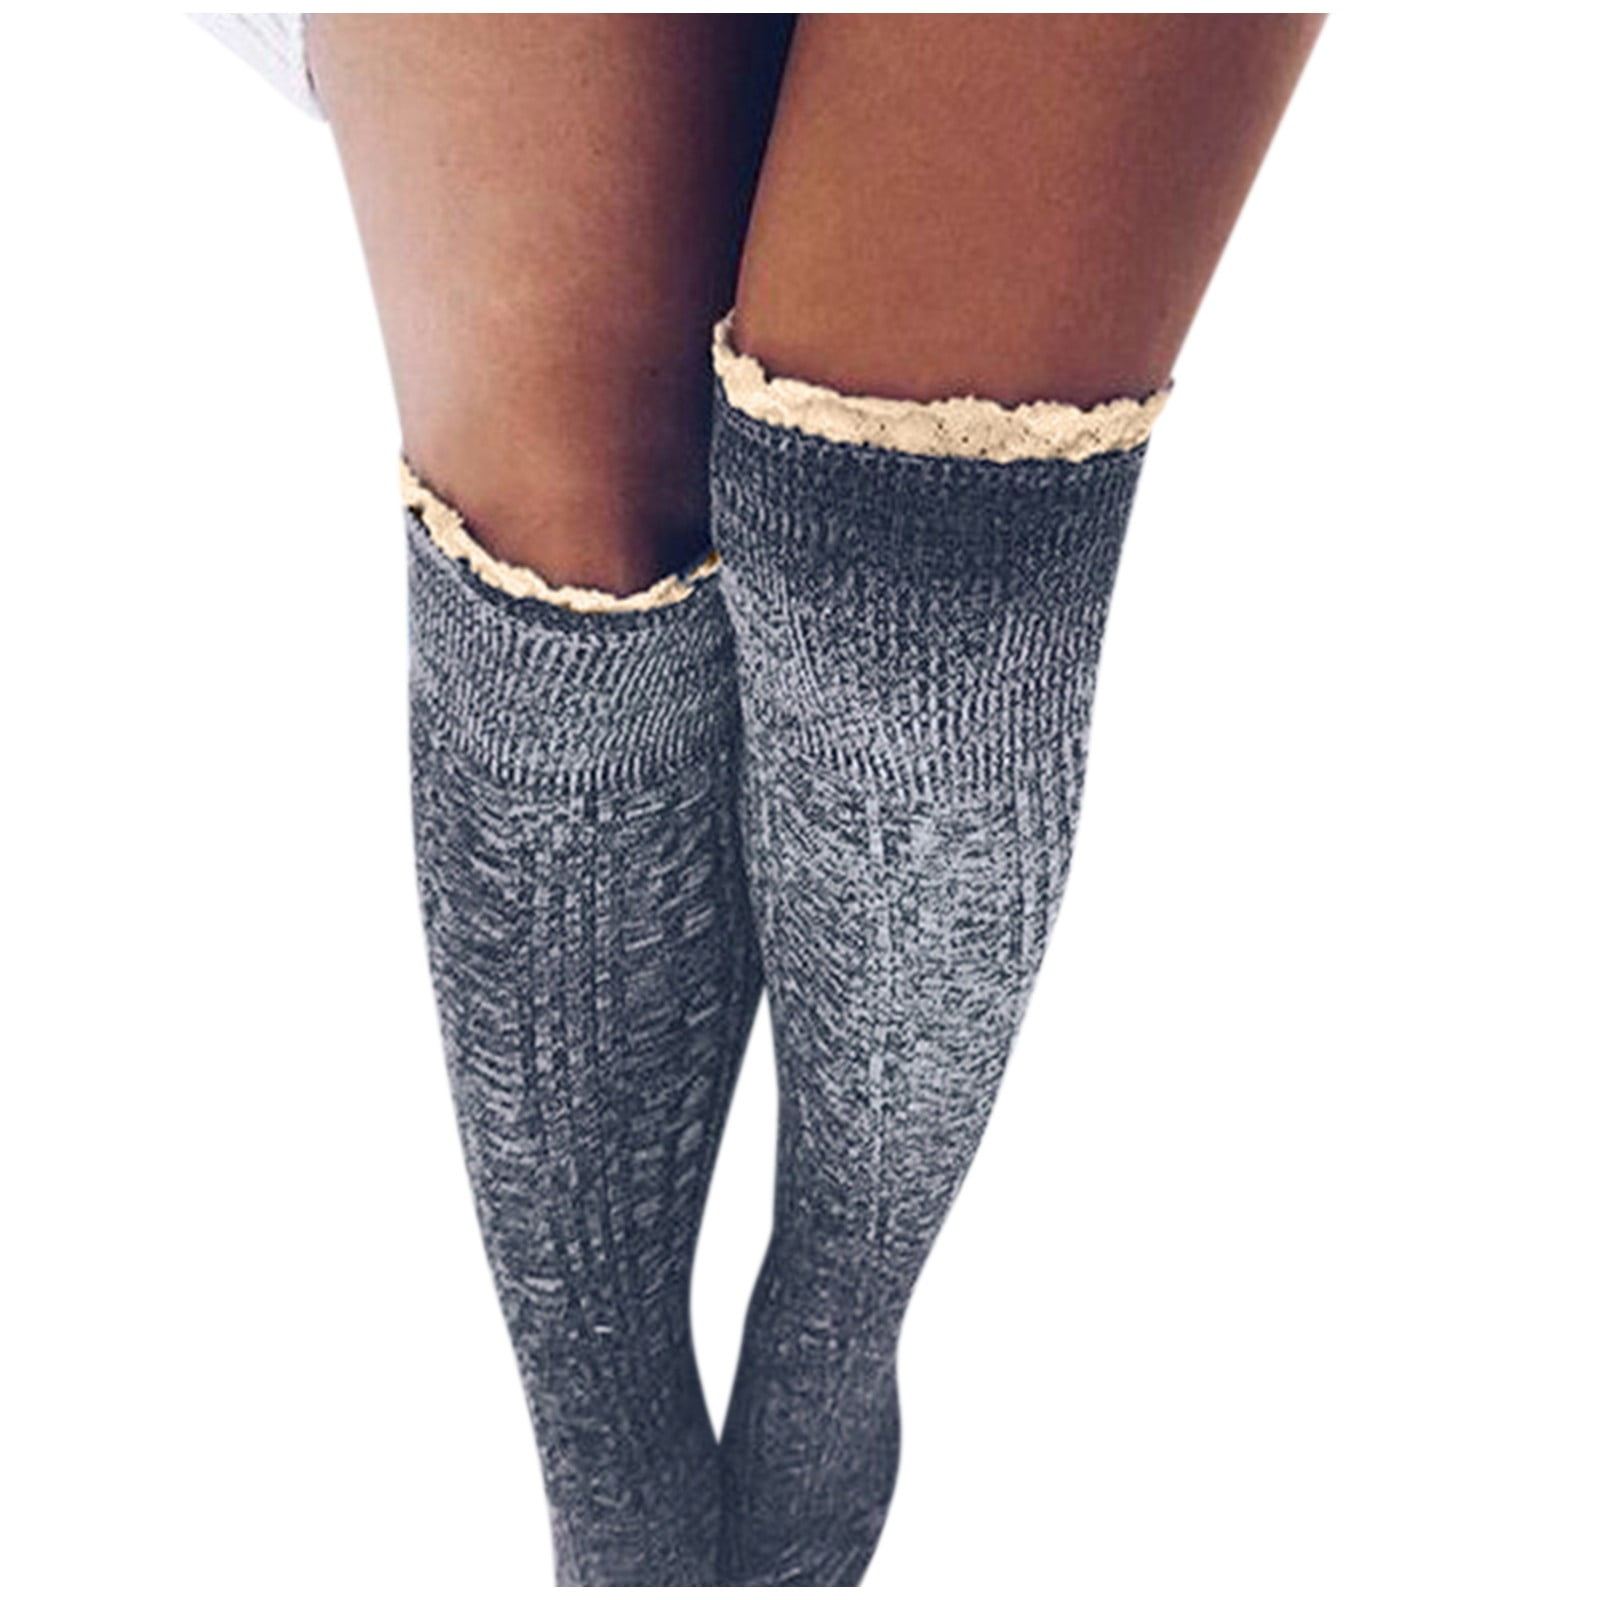 HSMQHJWE Womens Socks Black Over The Calf Socks For Women Thigh ...